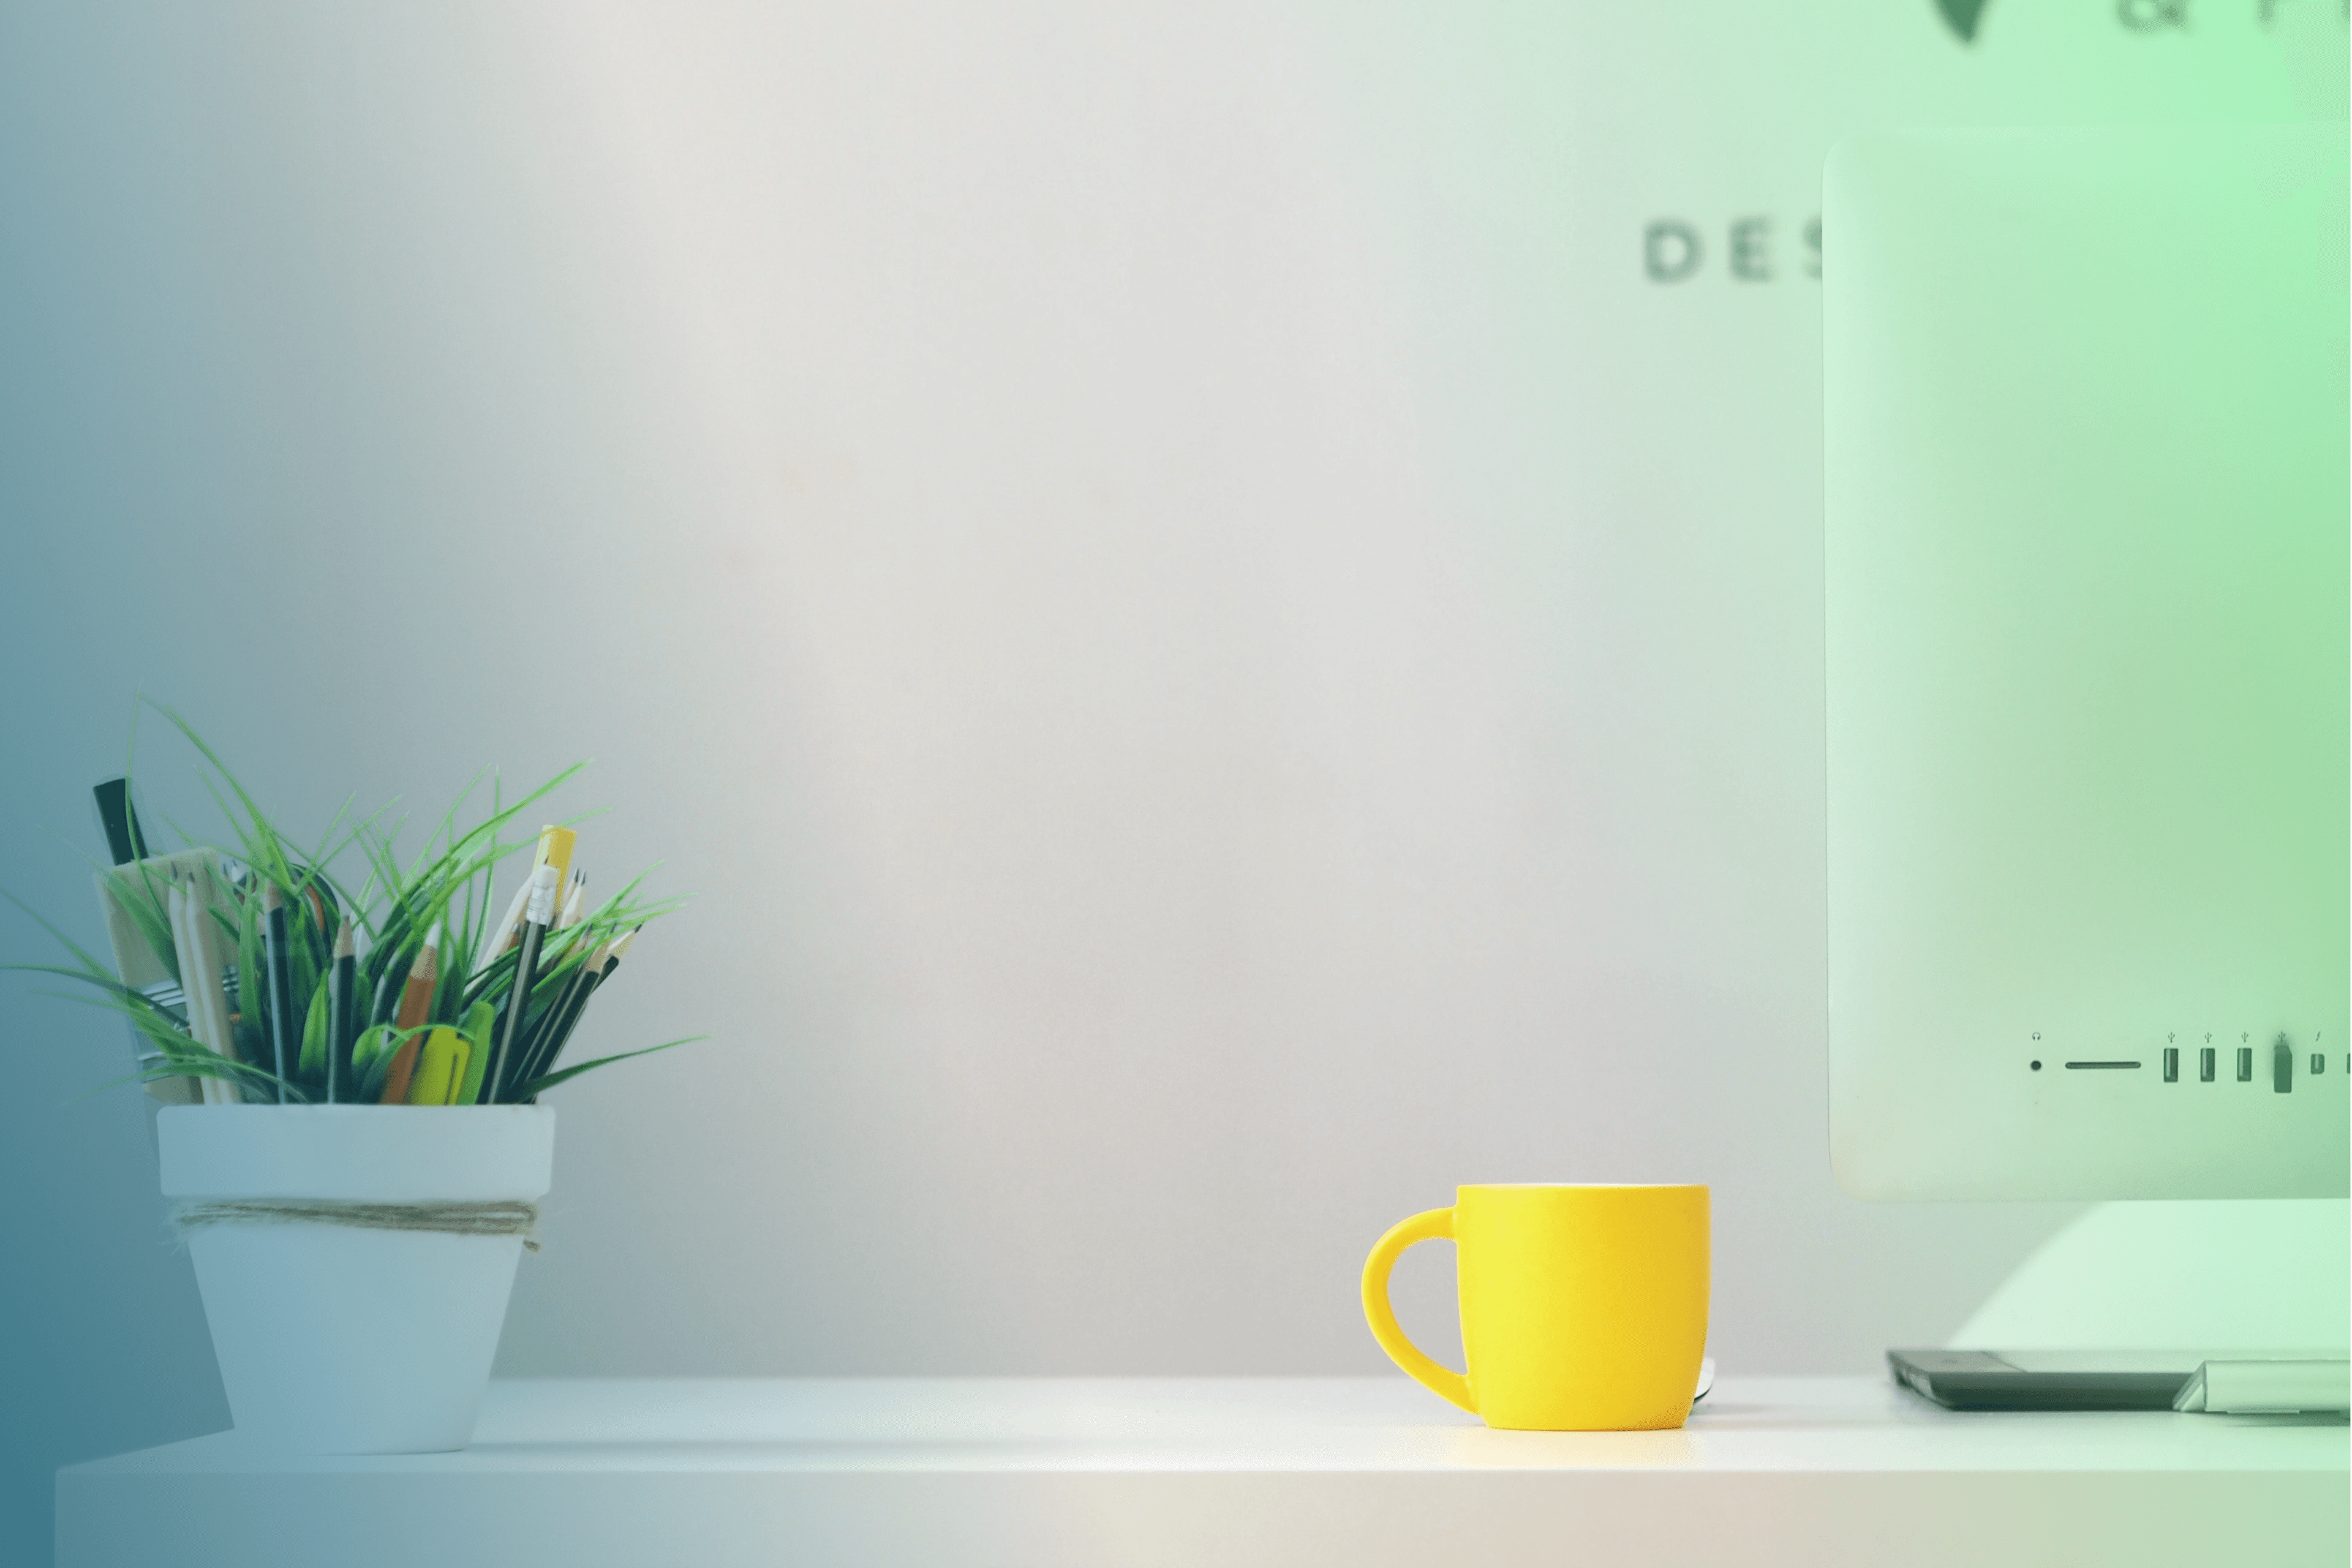 Header zeigt Schreibtisch mit Monitor, Vase, Stiften und gelber Kaffeetasse.